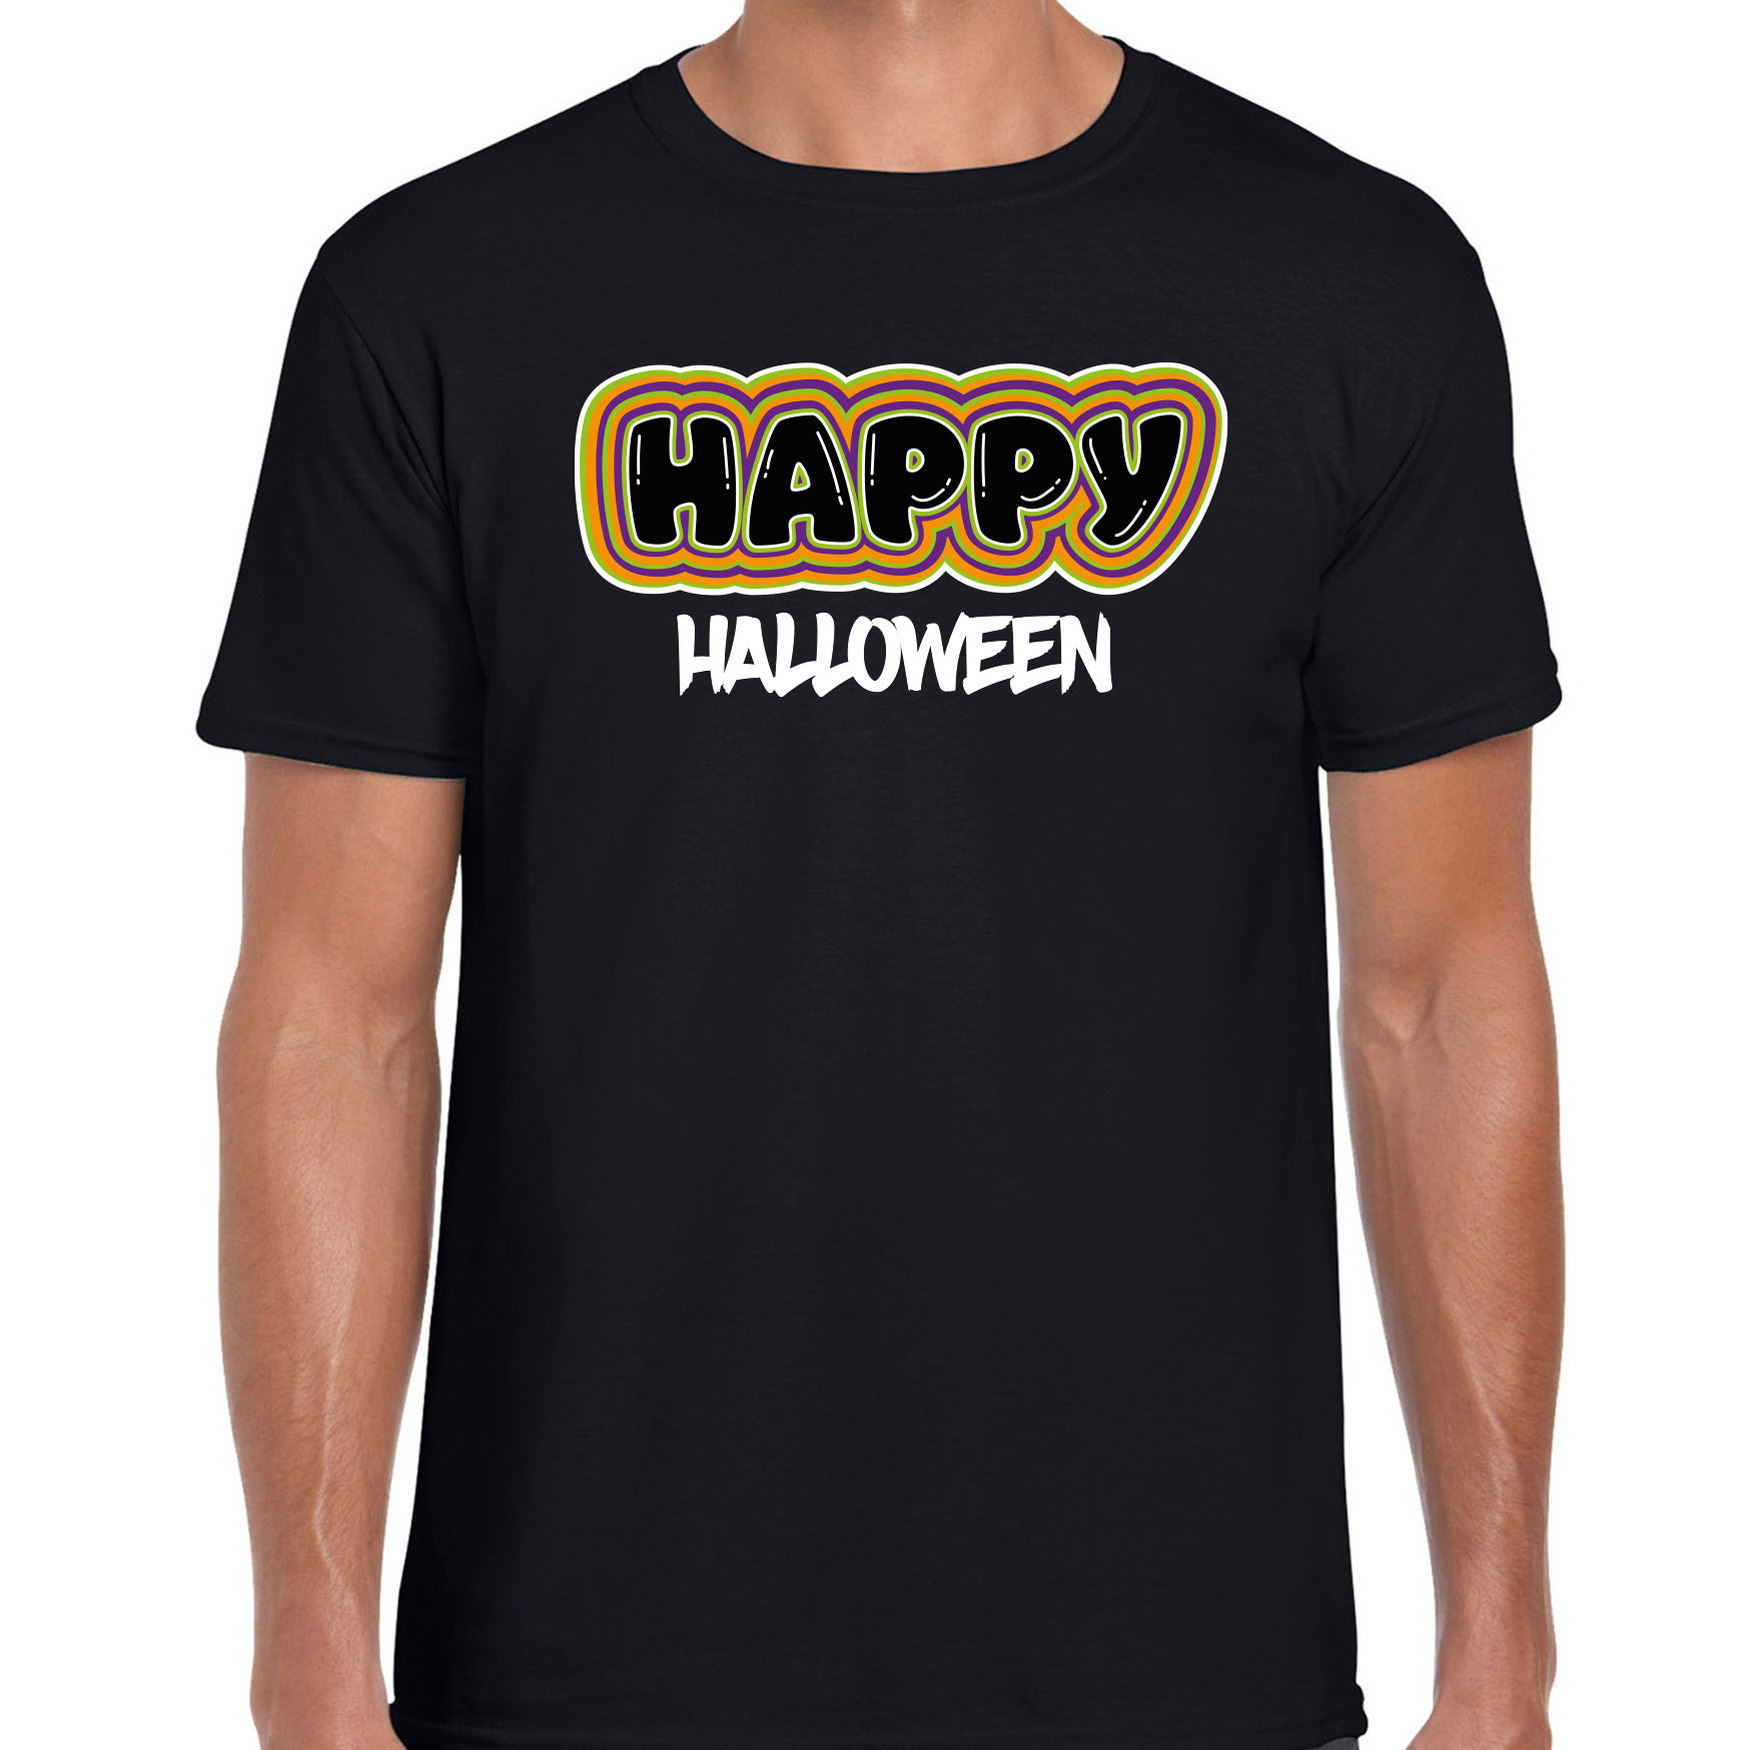 Halloween - Halloween verkleed t-shirt heren - Happy Halloween - zwart - themafeest outfit